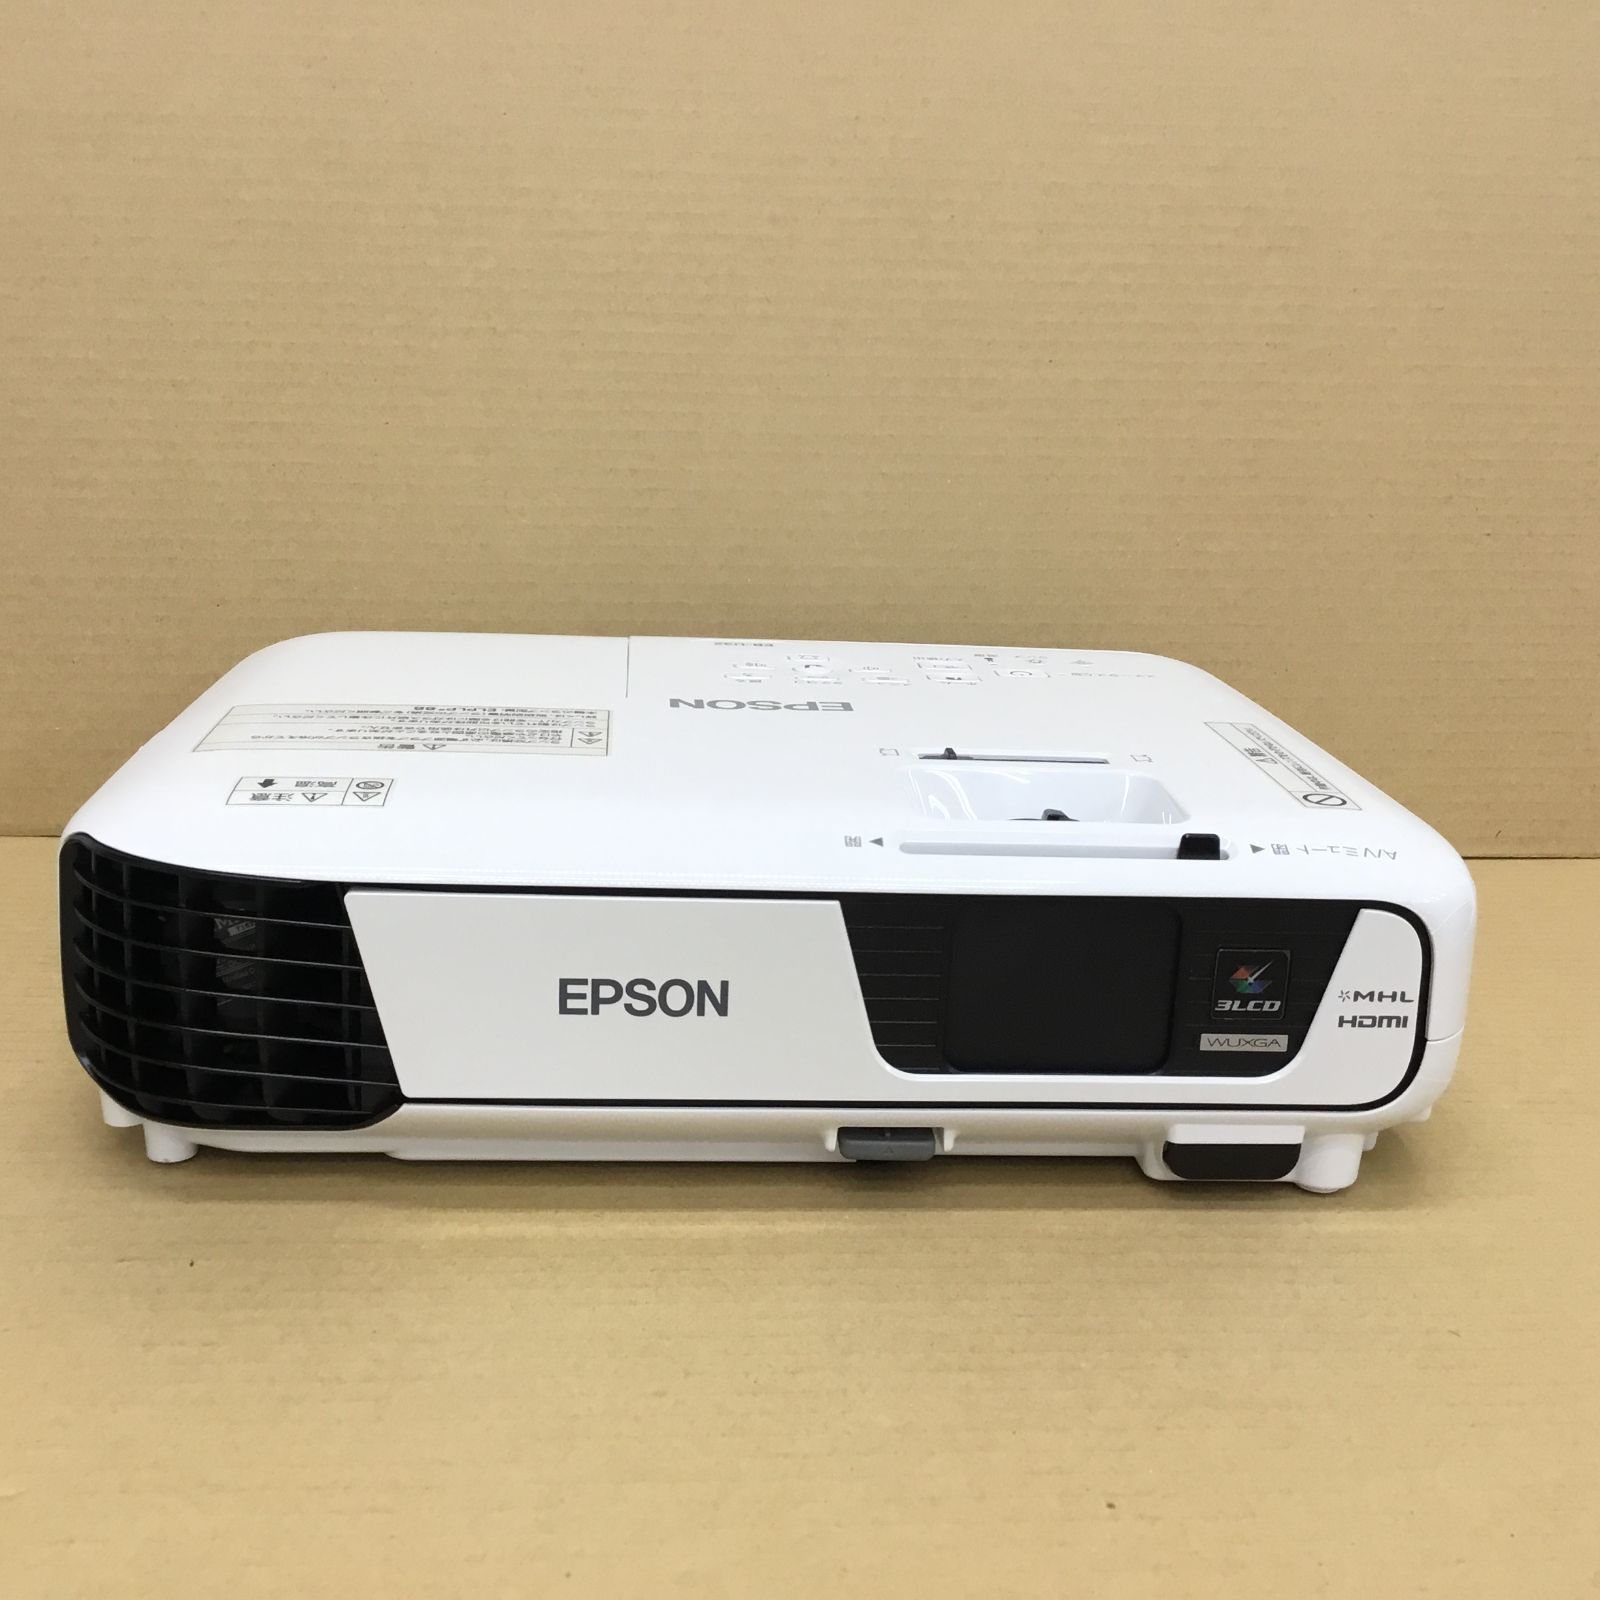 EPSONプロジェクター EB-U32